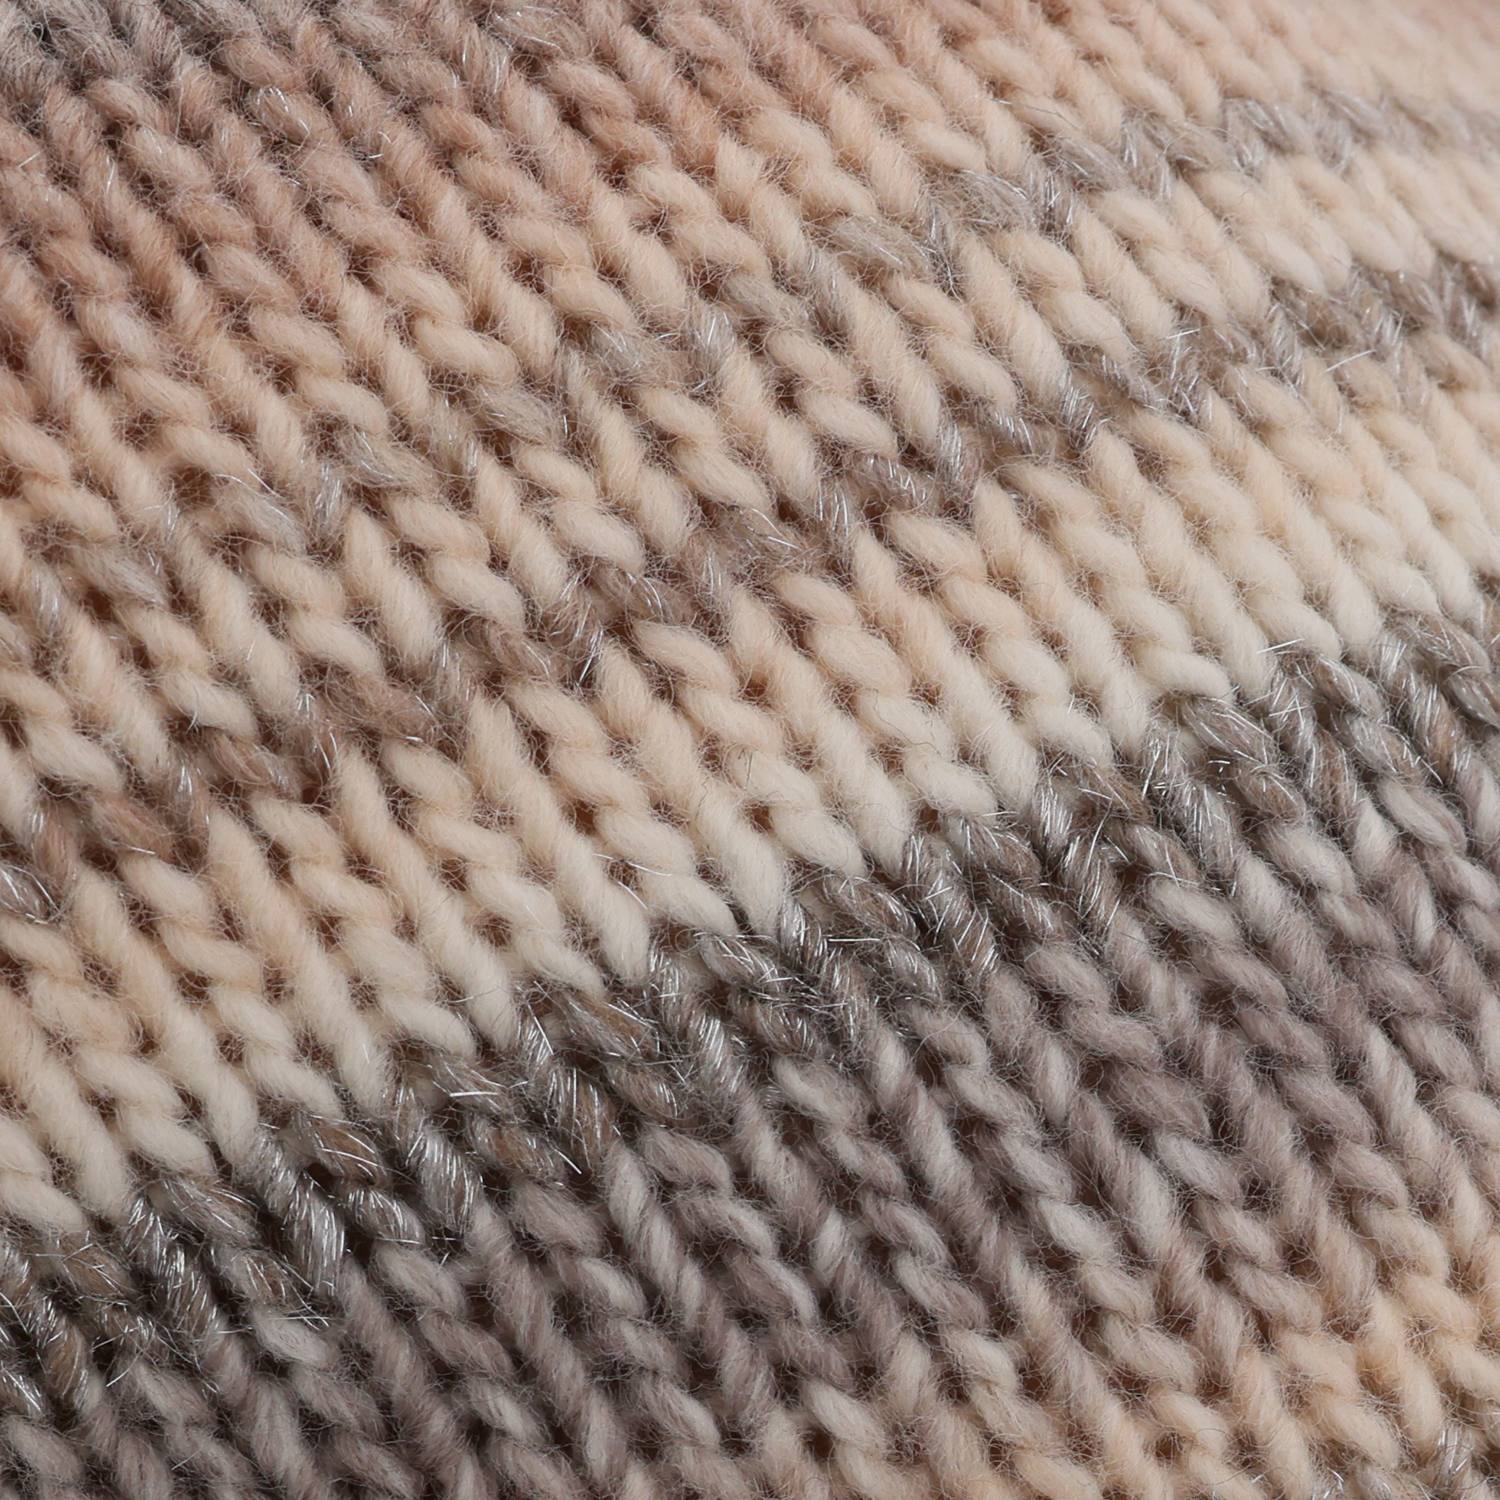 ソアージュ イタリア・ディーベ社製 カラーミックス糸使用 きらめくグラデーション 配色切替 ニットプルオーバー